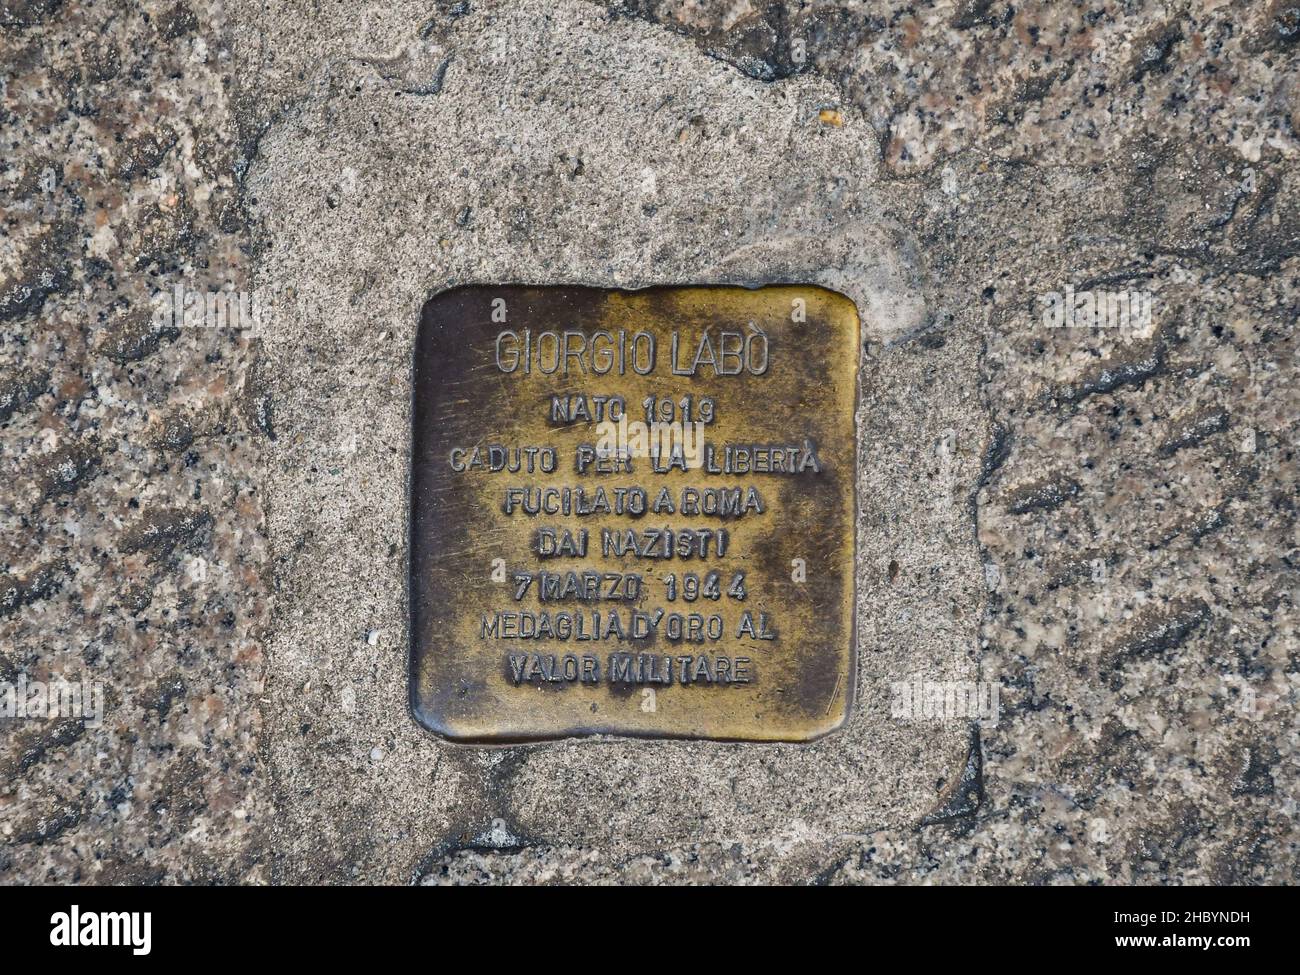 Il "blocco di rotolamento" di Gunter Deming dedicato alla memoria di Giorgio Labò, sparato dai nazisti, posto su un marciapiede in Via Roma, Genova Foto Stock